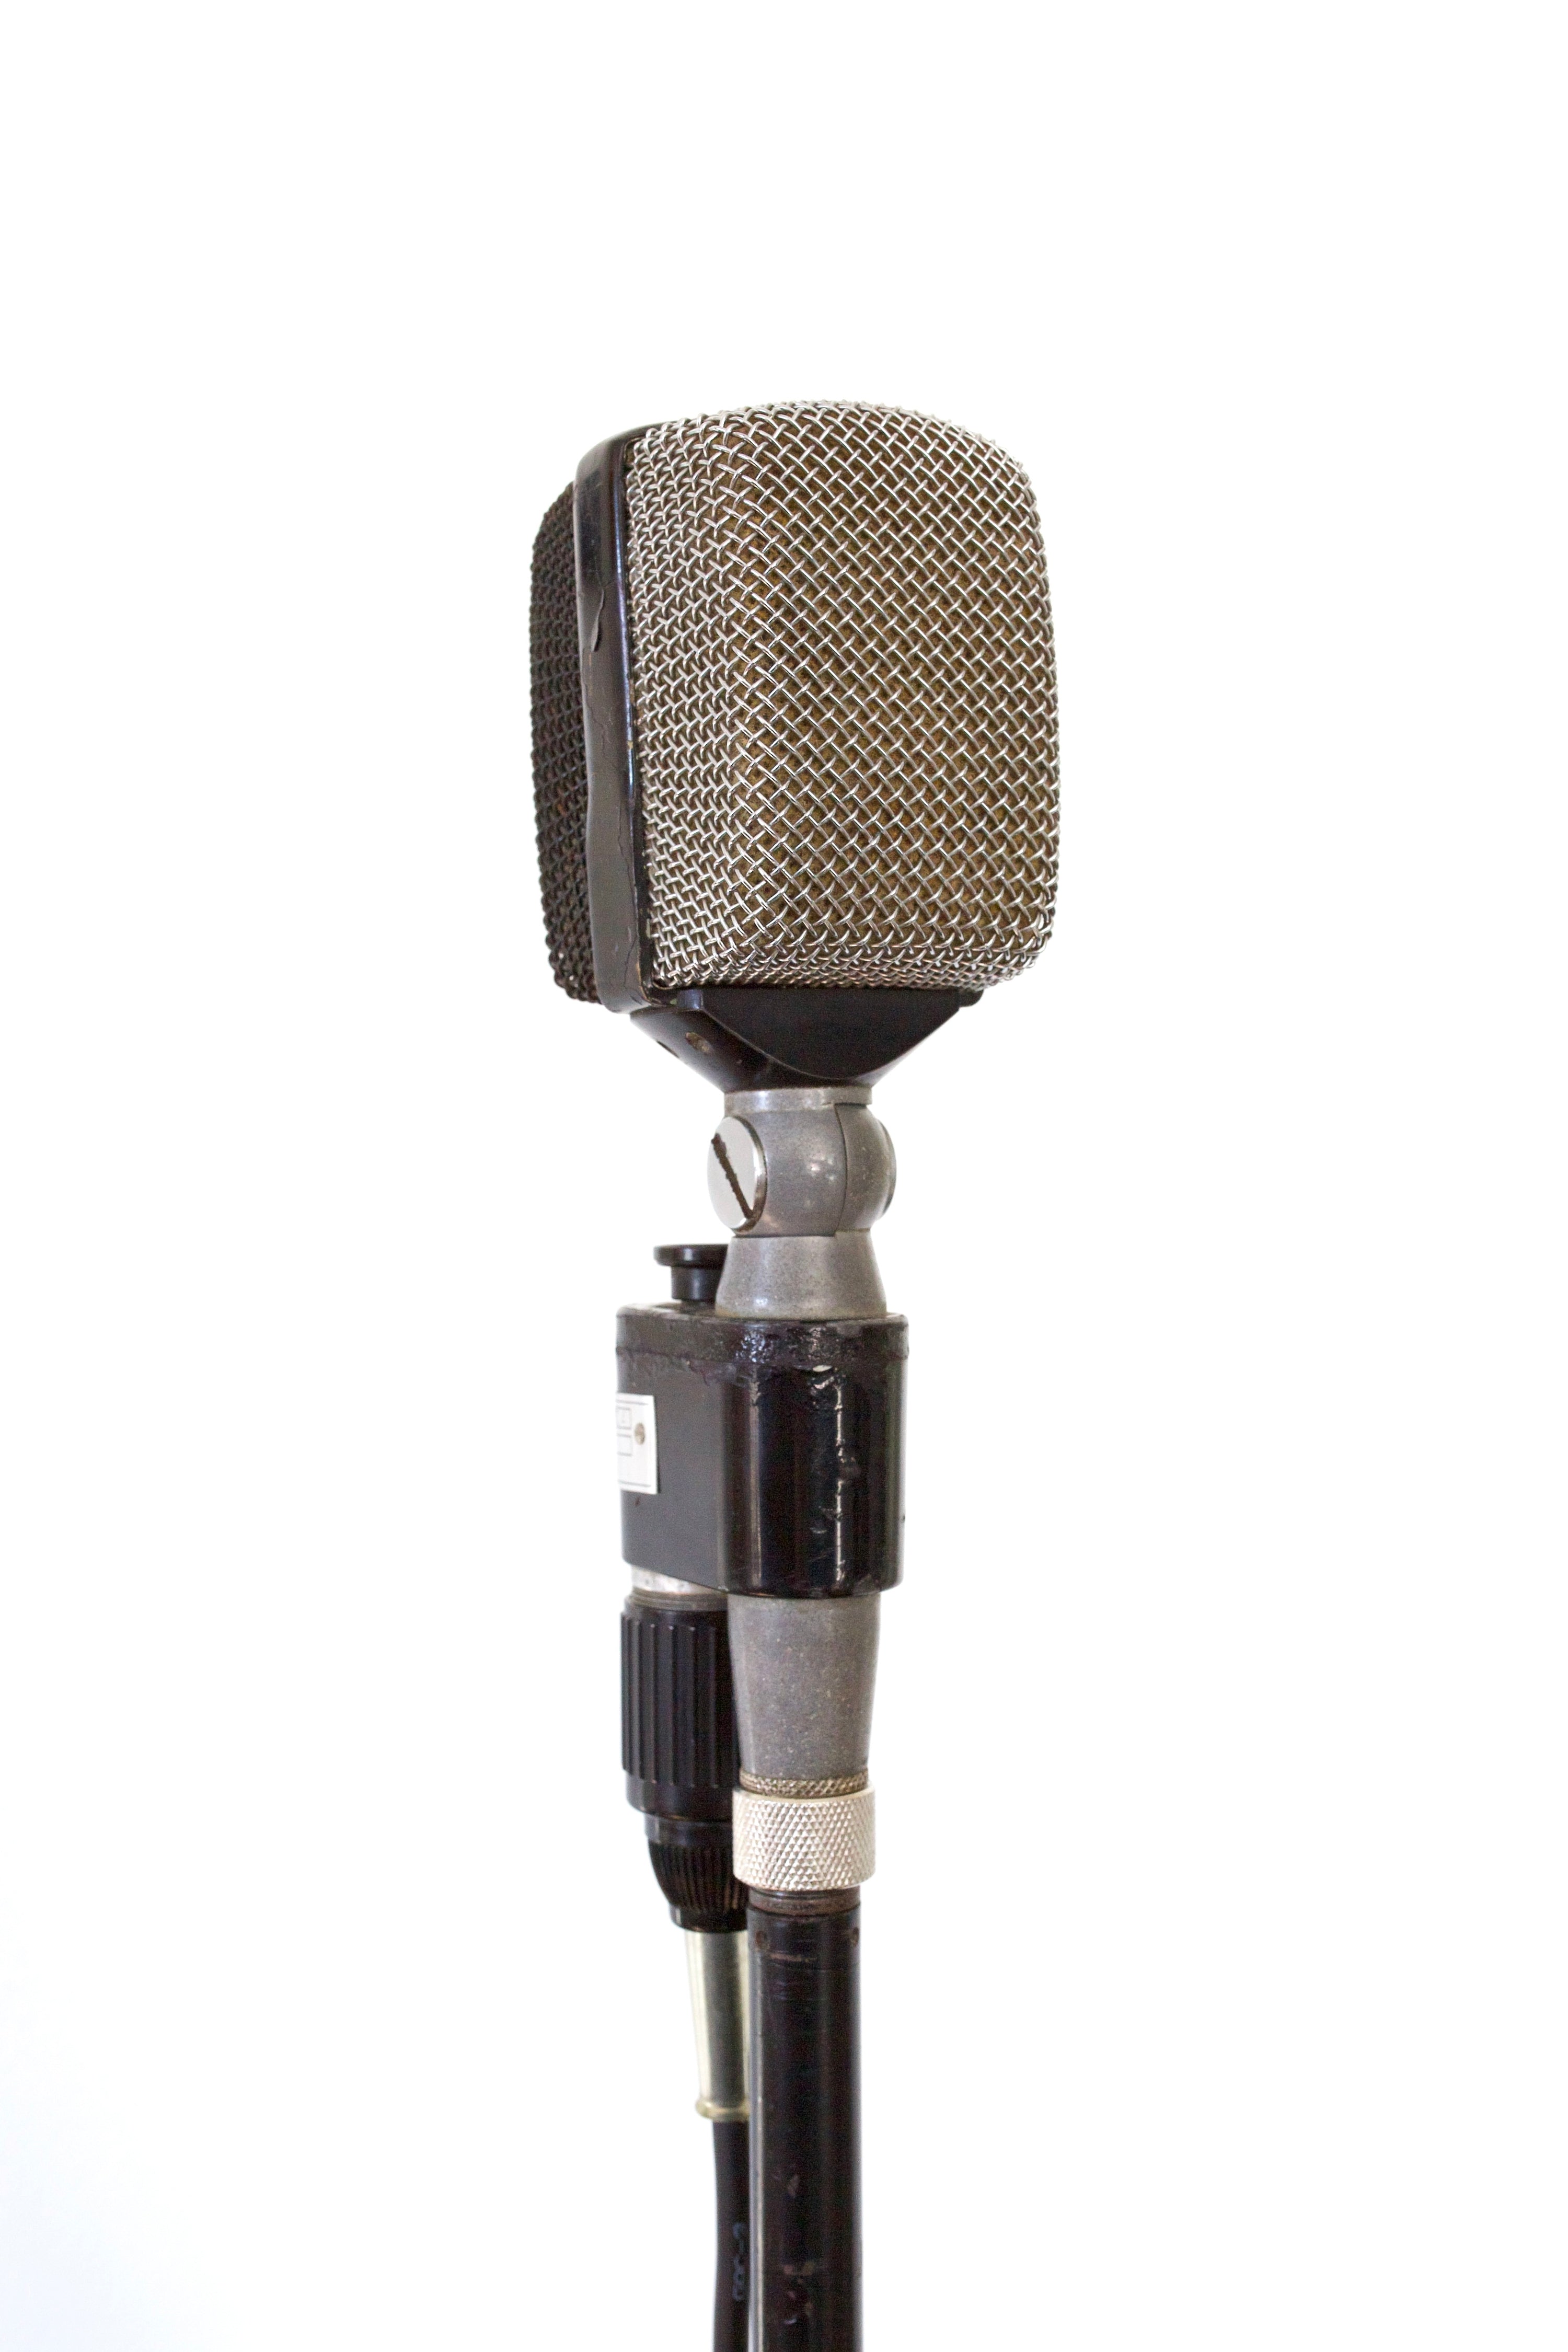 AKG D20 Dynamic Microphone